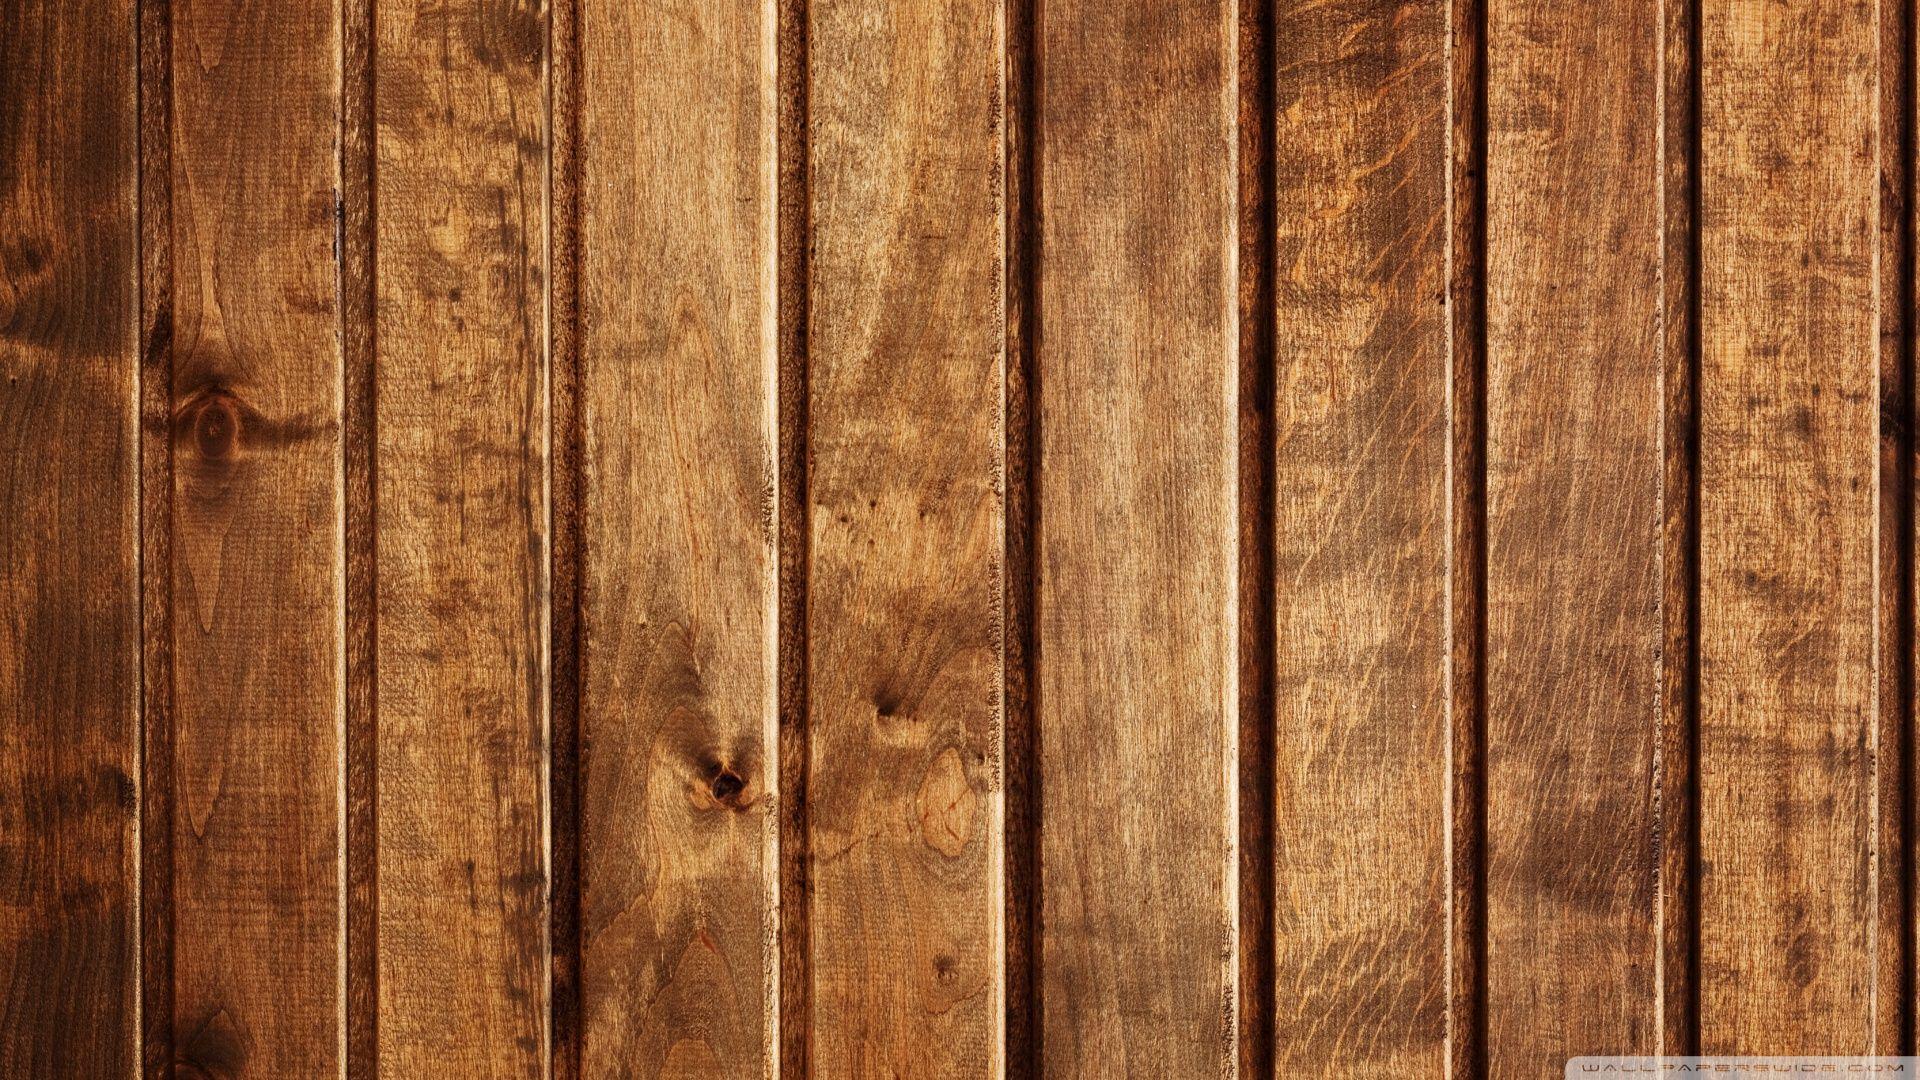 Wooden Floor Texture iPhone 5 Wallpaper Download | iPad Wallpapers & iPhone  Wallpapers One-stop Dow… | Wood wallpaper, Iphone 6 plus wallpaper, Wooden  floor texture